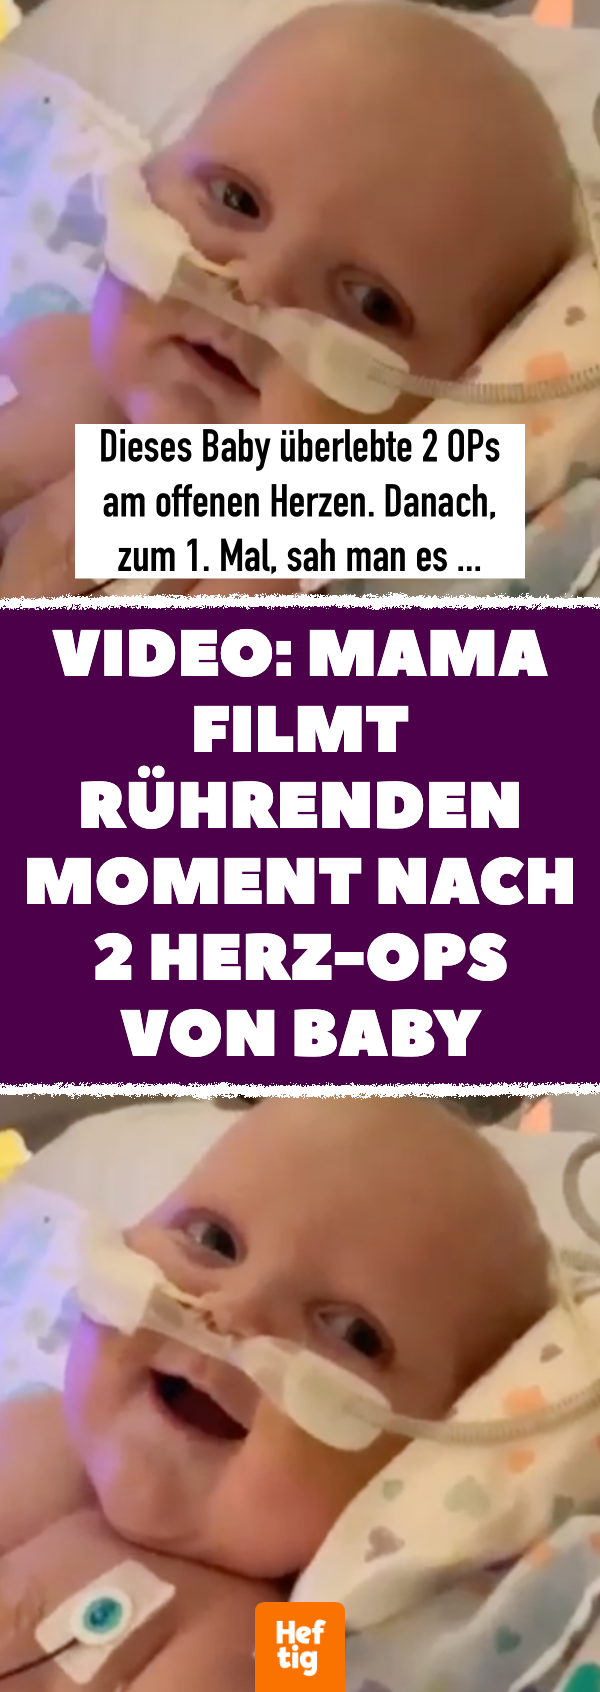 Video: Mama filmt rührenden Moment nach OP von Baby